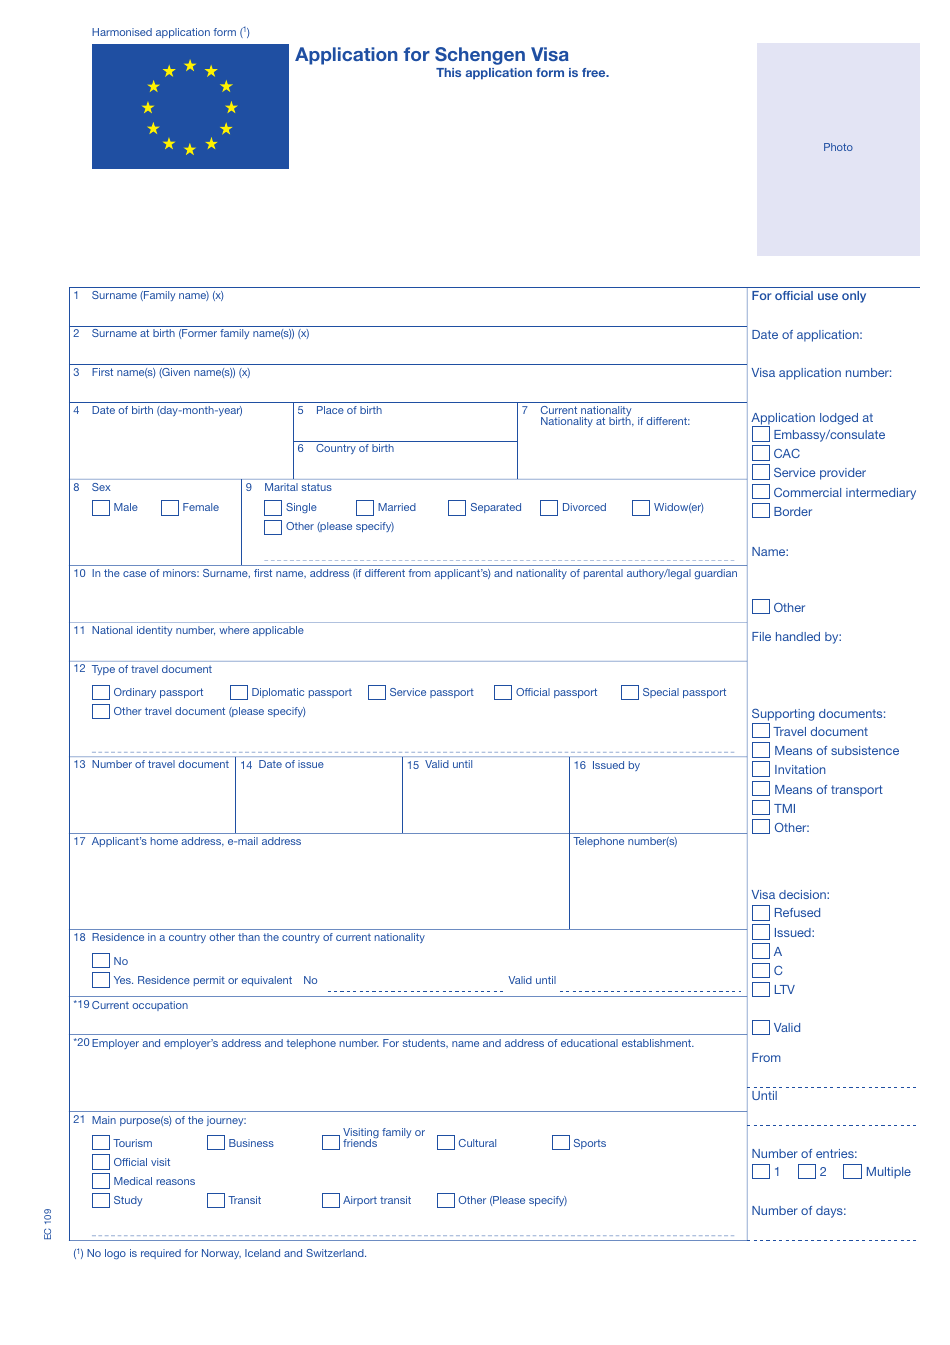 Schengen Visa Application Form - Finland, Page 1